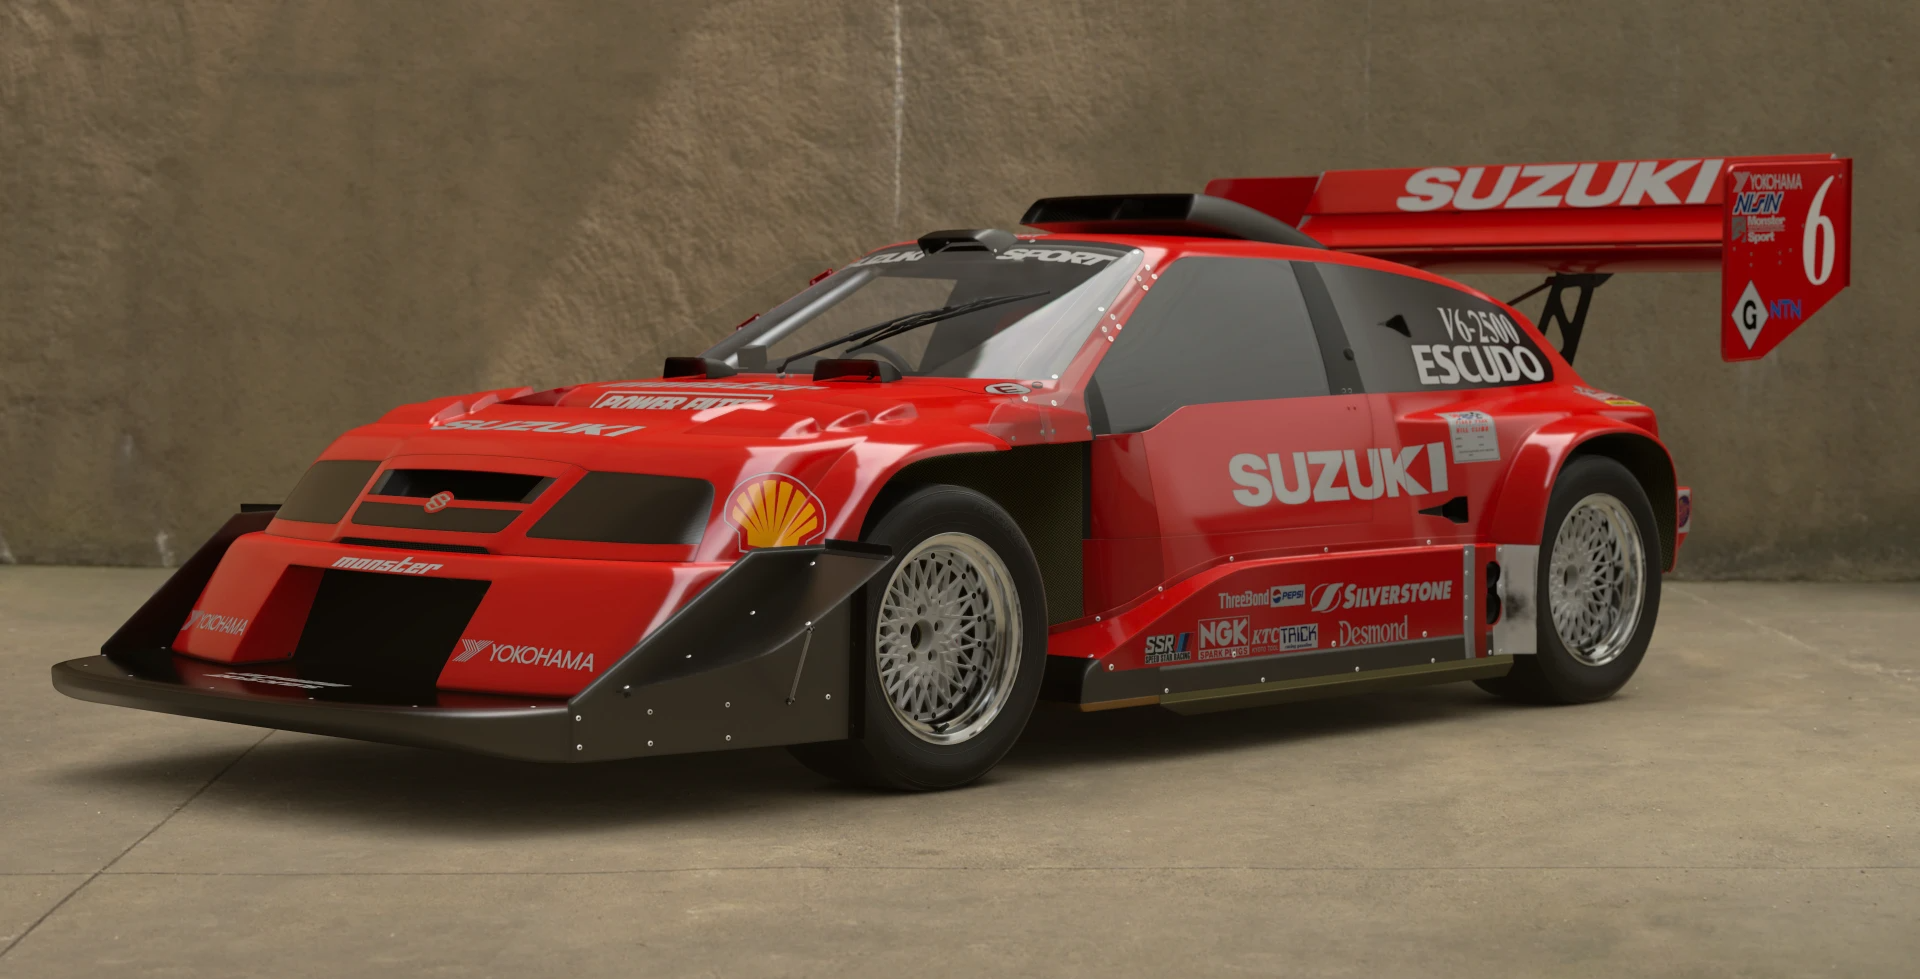 Suzuki Escudo foi o carro mais apelão do Gran Turismo no